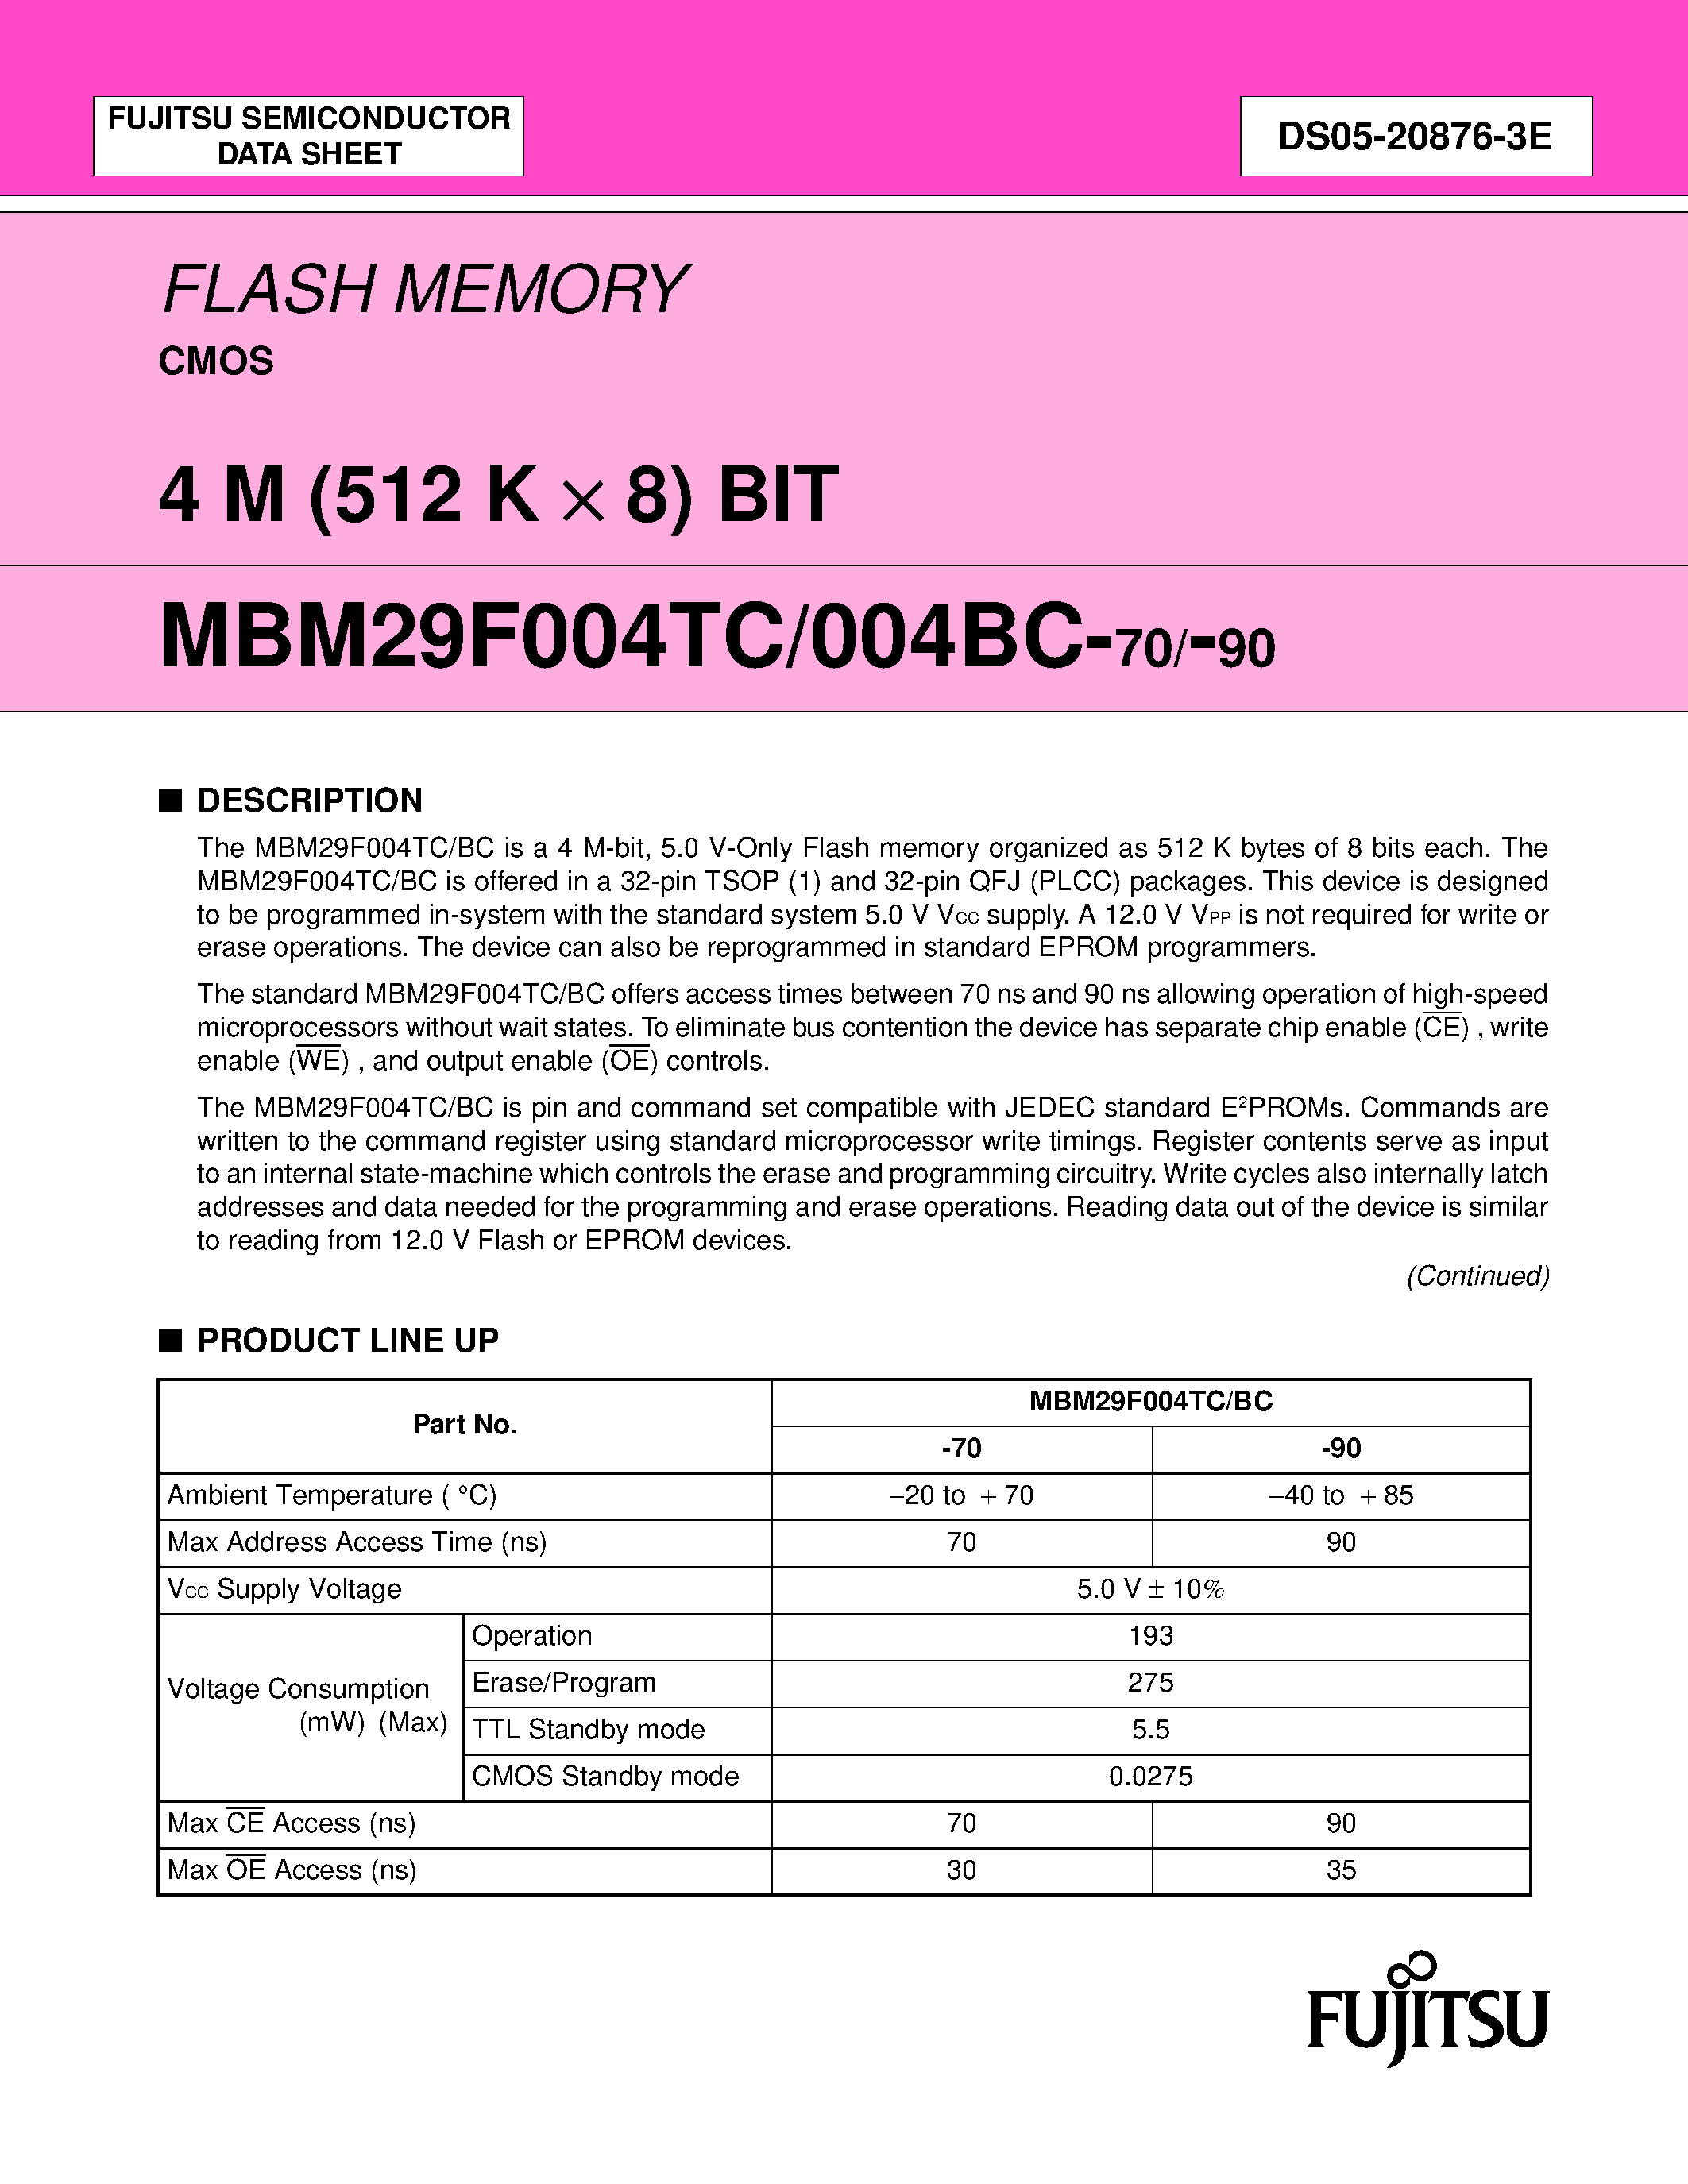 Даташит MBM29F004BC - (MBM29F004BC/TC) FLASH MEMORY CMOS 4 M (512 K X 8) BIT страница 1